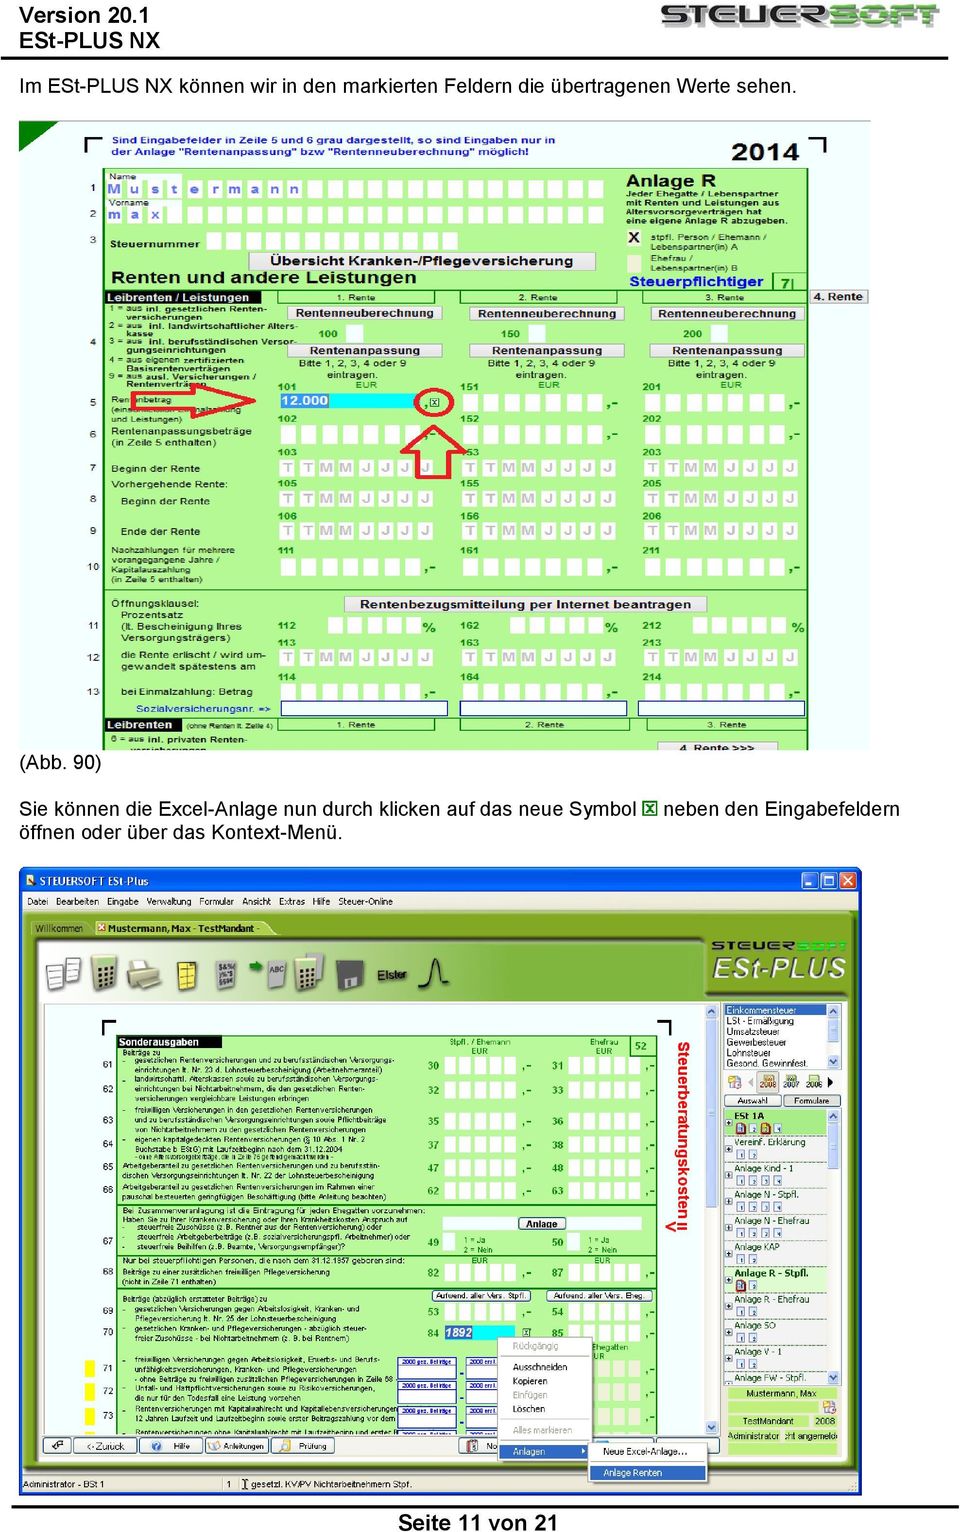 90) Sie können die Excel-Anlage nun durch klicken auf